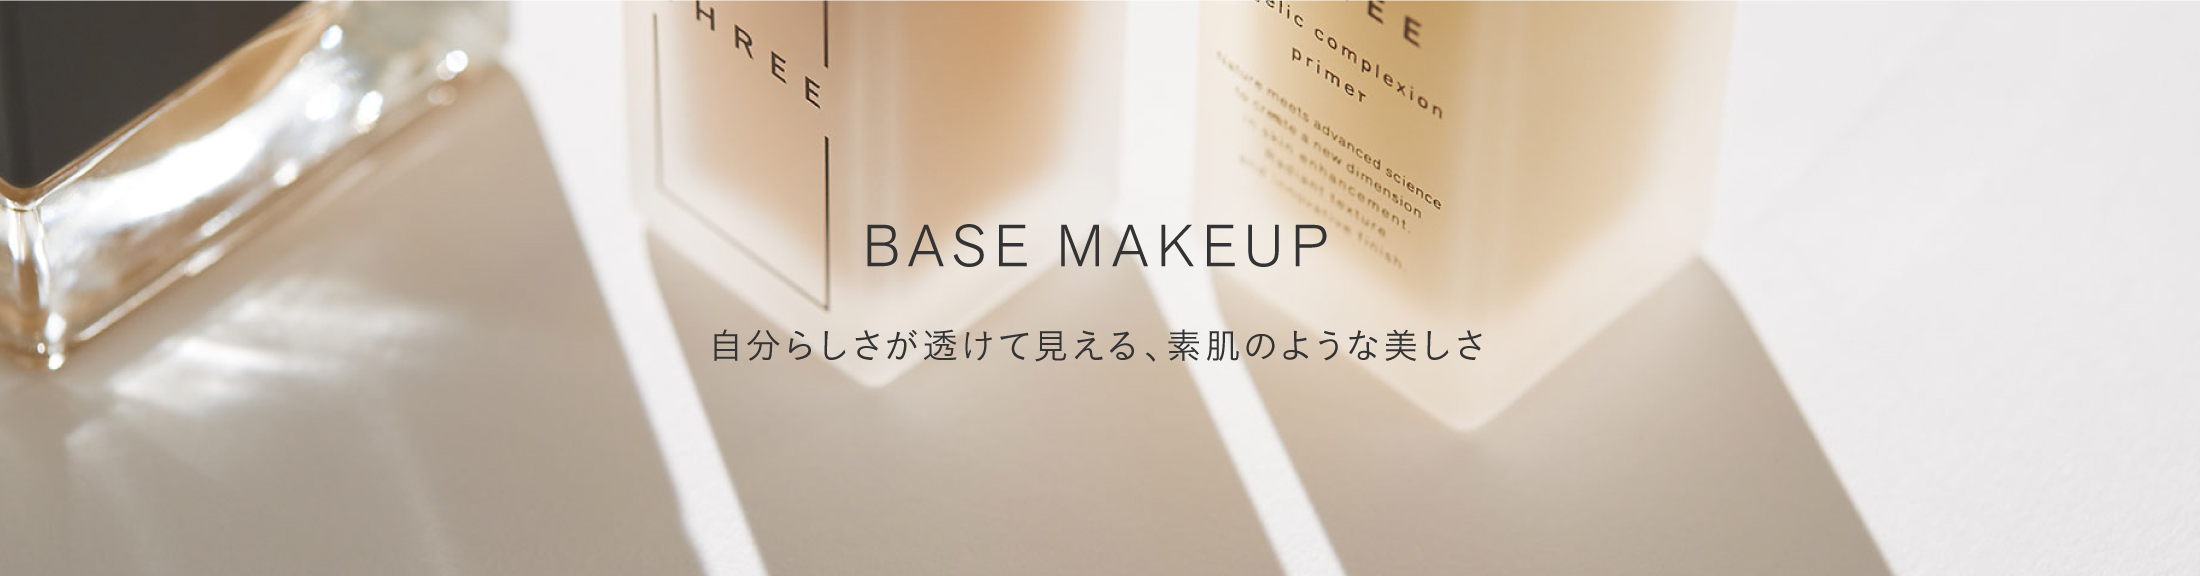 2_base_makeup